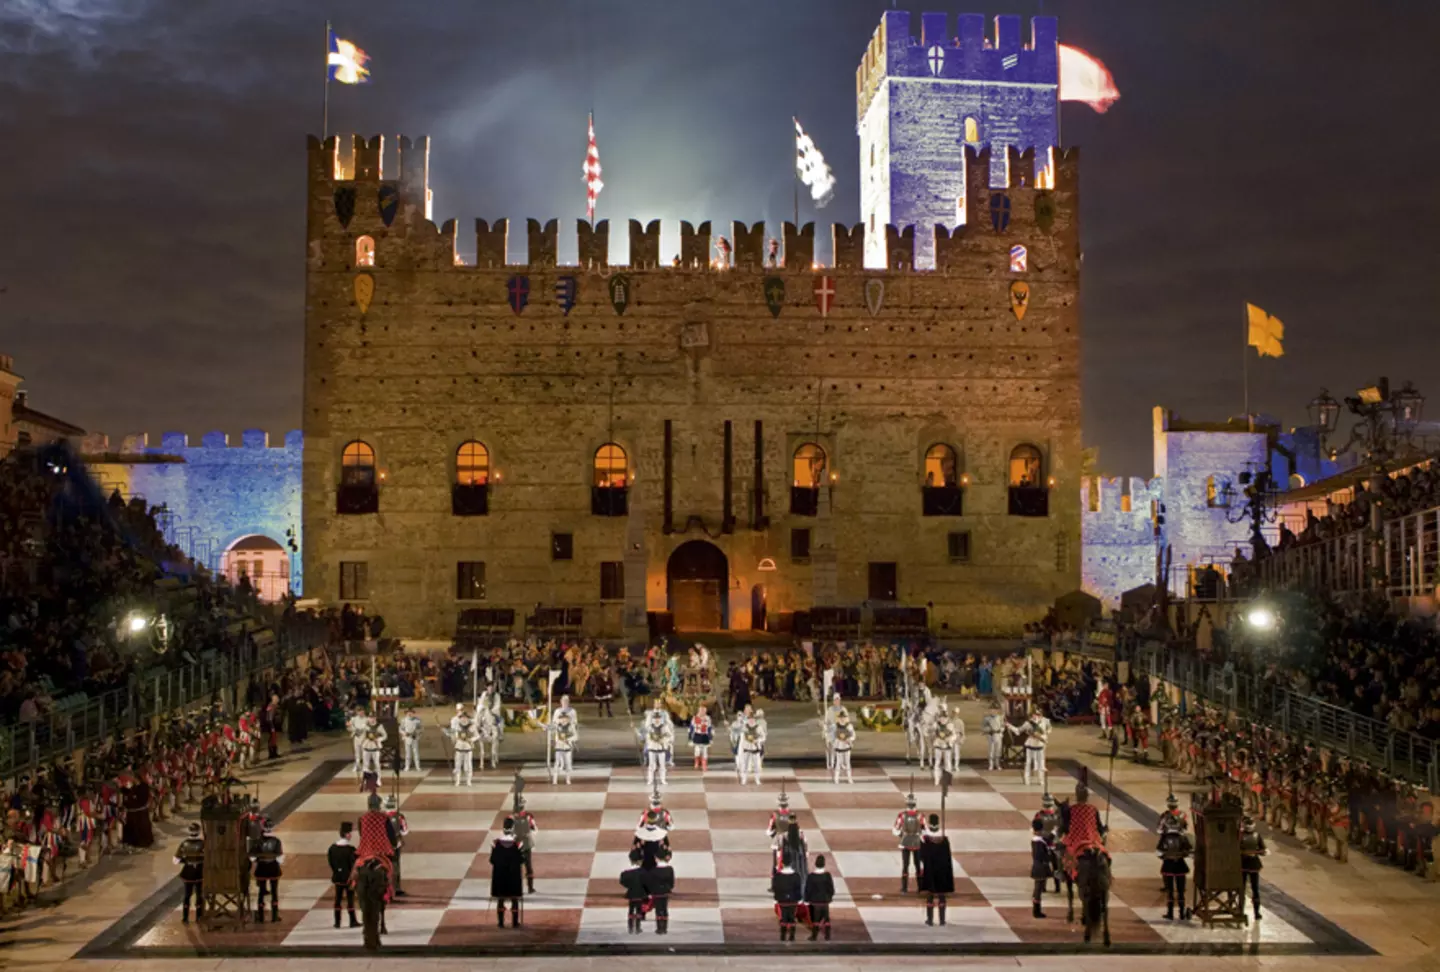 Vimar sponsor Partita a scacchi - Castello medioevale e piazza degli scacchi - Marostica